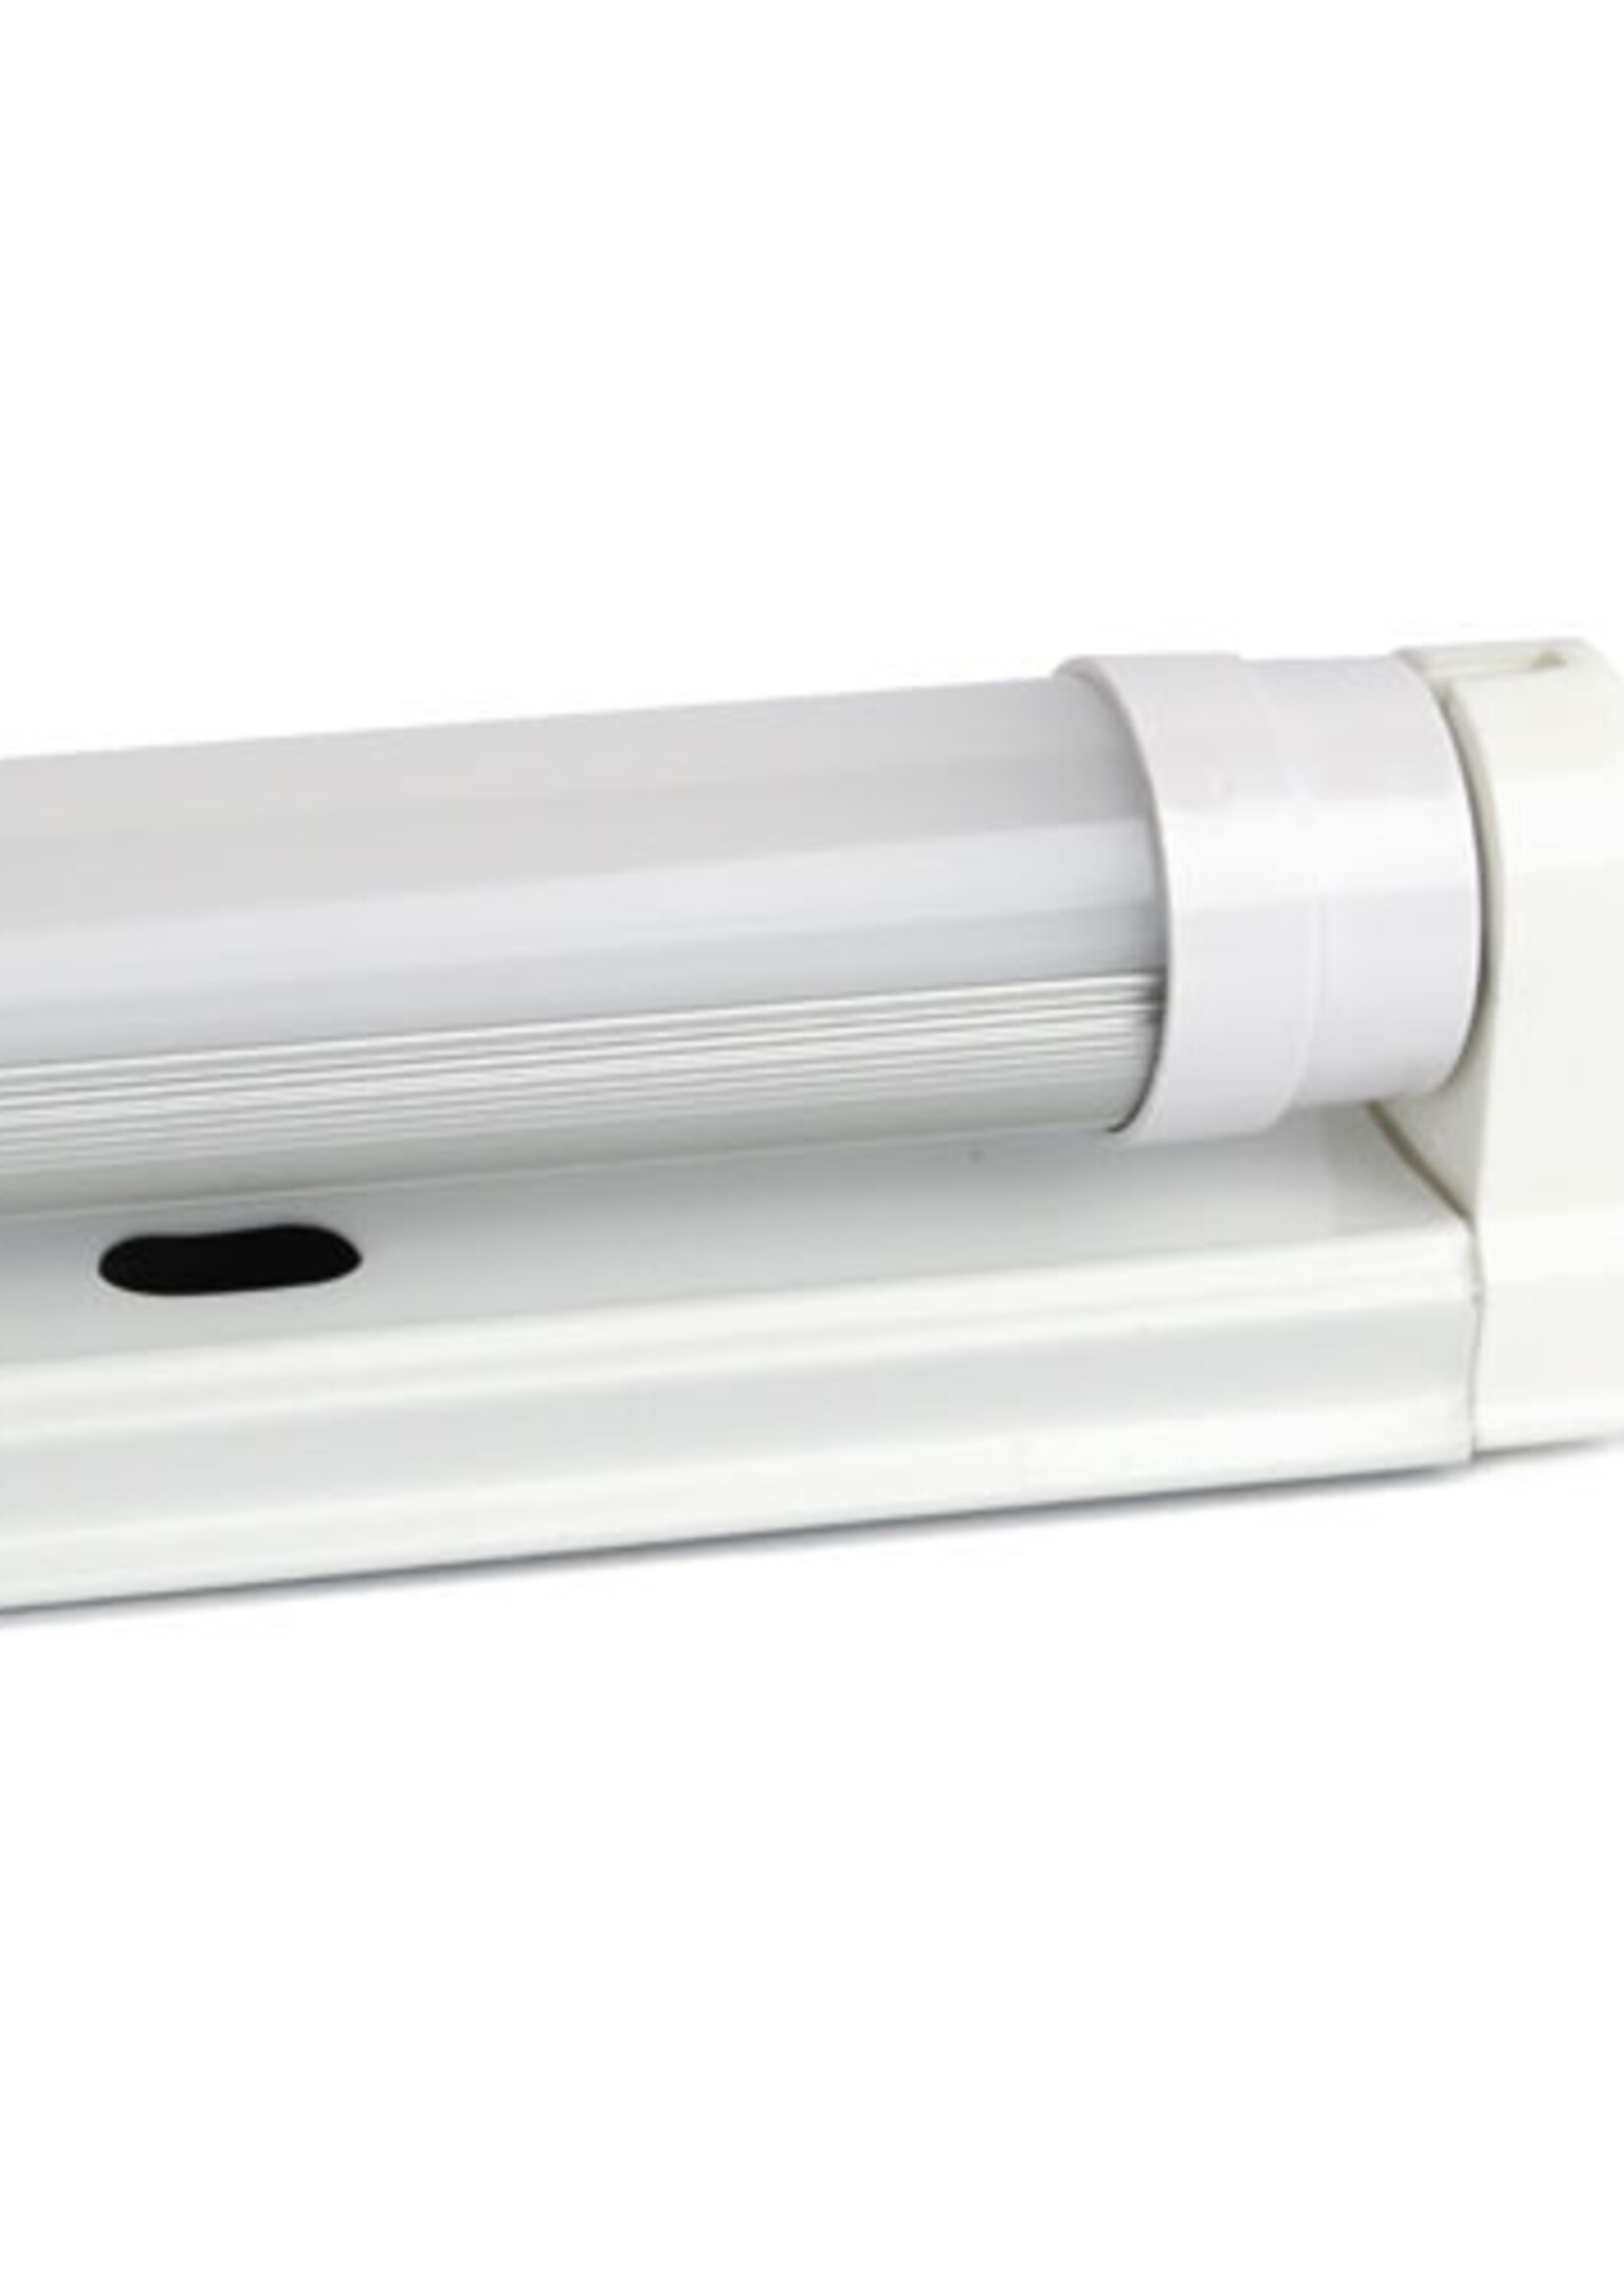 LEDWINKEL-Online LED TL Buis T8 120cm 18W 140lm/W - Pro High lumen